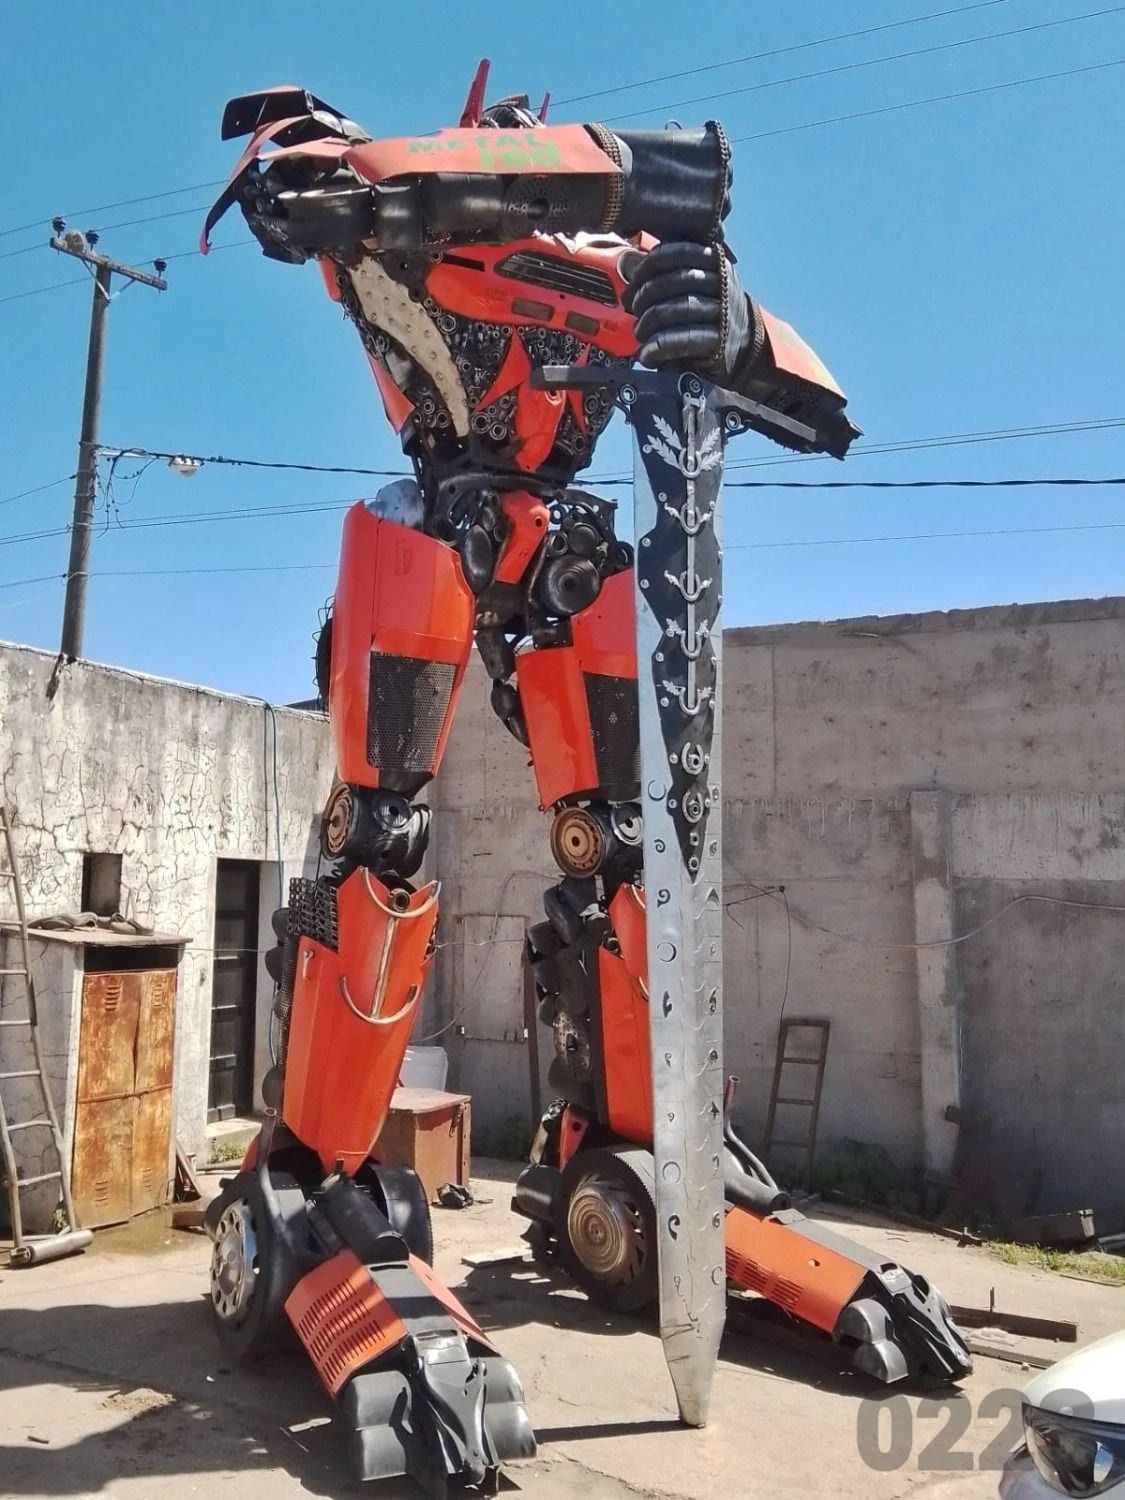 La figura construida con metales y restos de chatarra es una réplica de los Transformers. Foto:0223